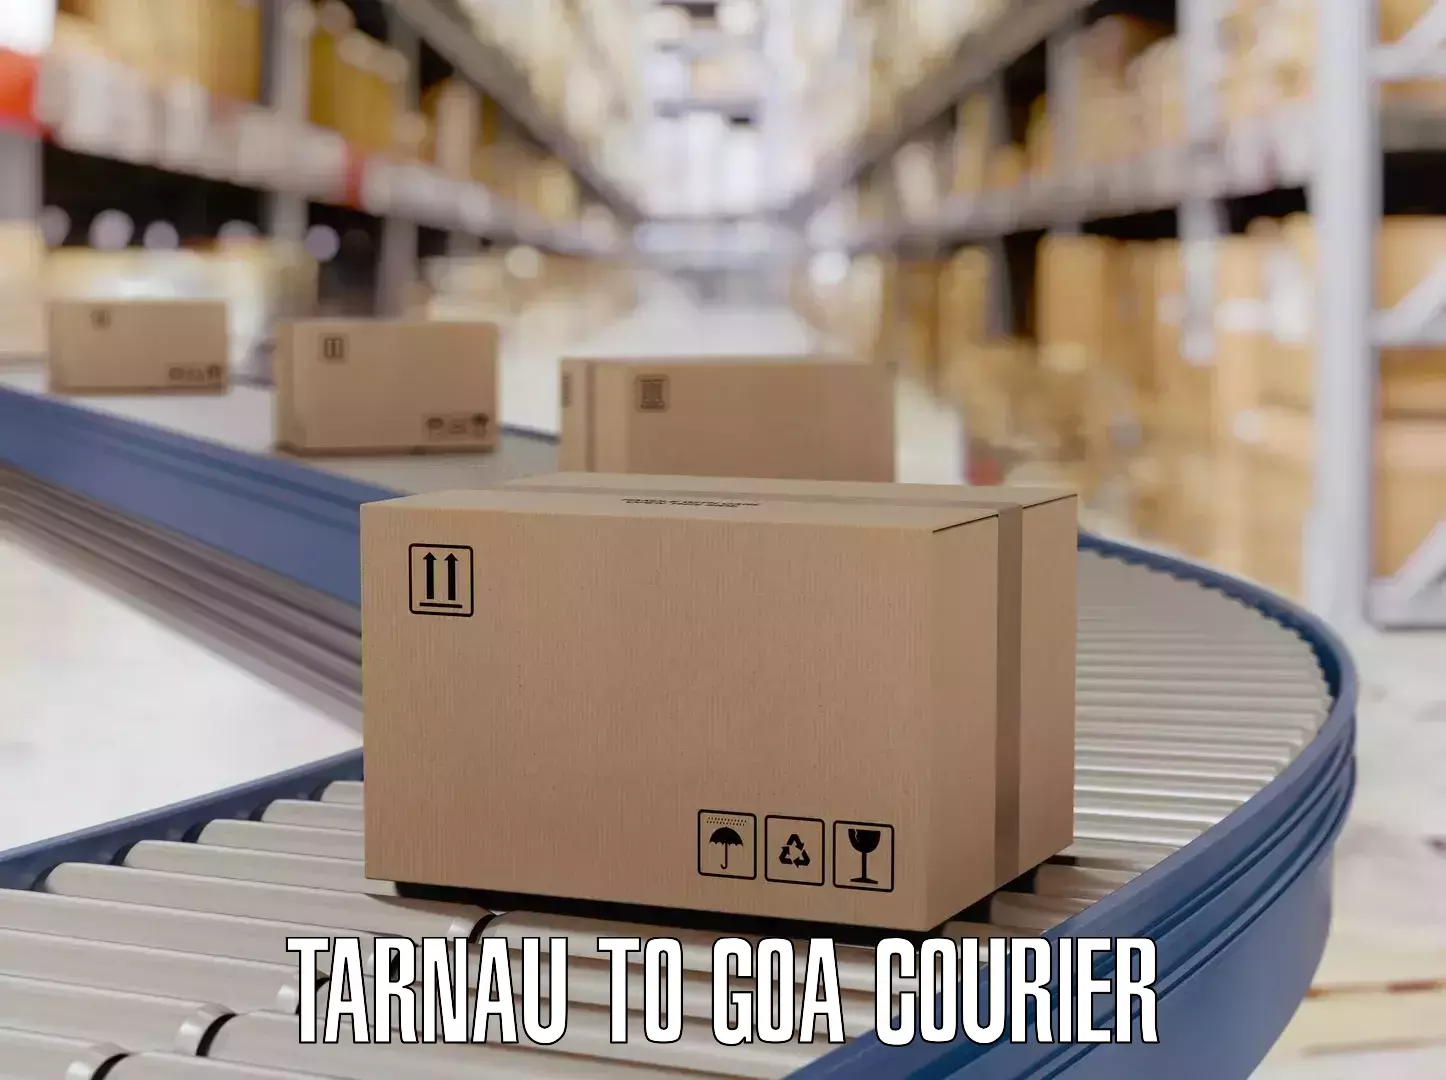 Luggage delivery network Tarnau to IIT Goa